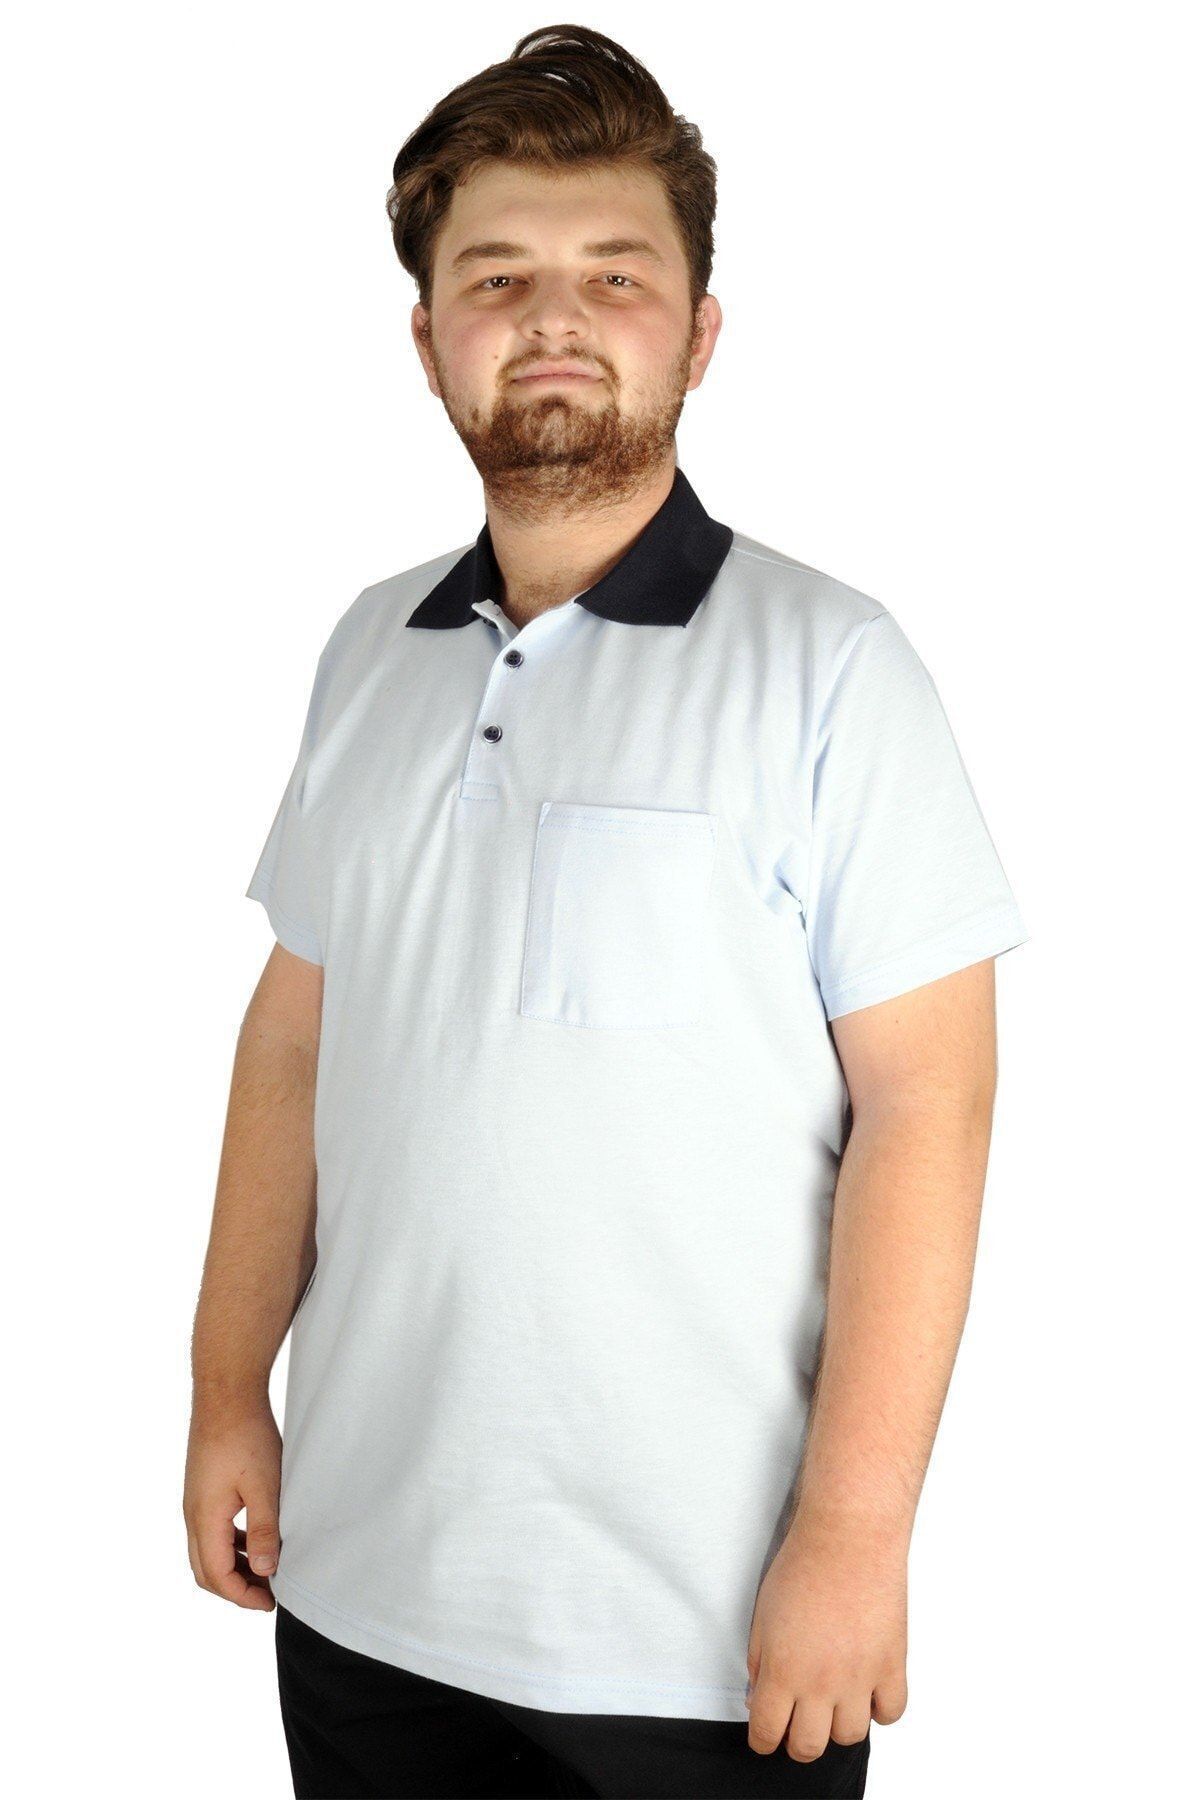 Modexl T-shirt Polo Yaka Cepli Klasik 20550 Mavi